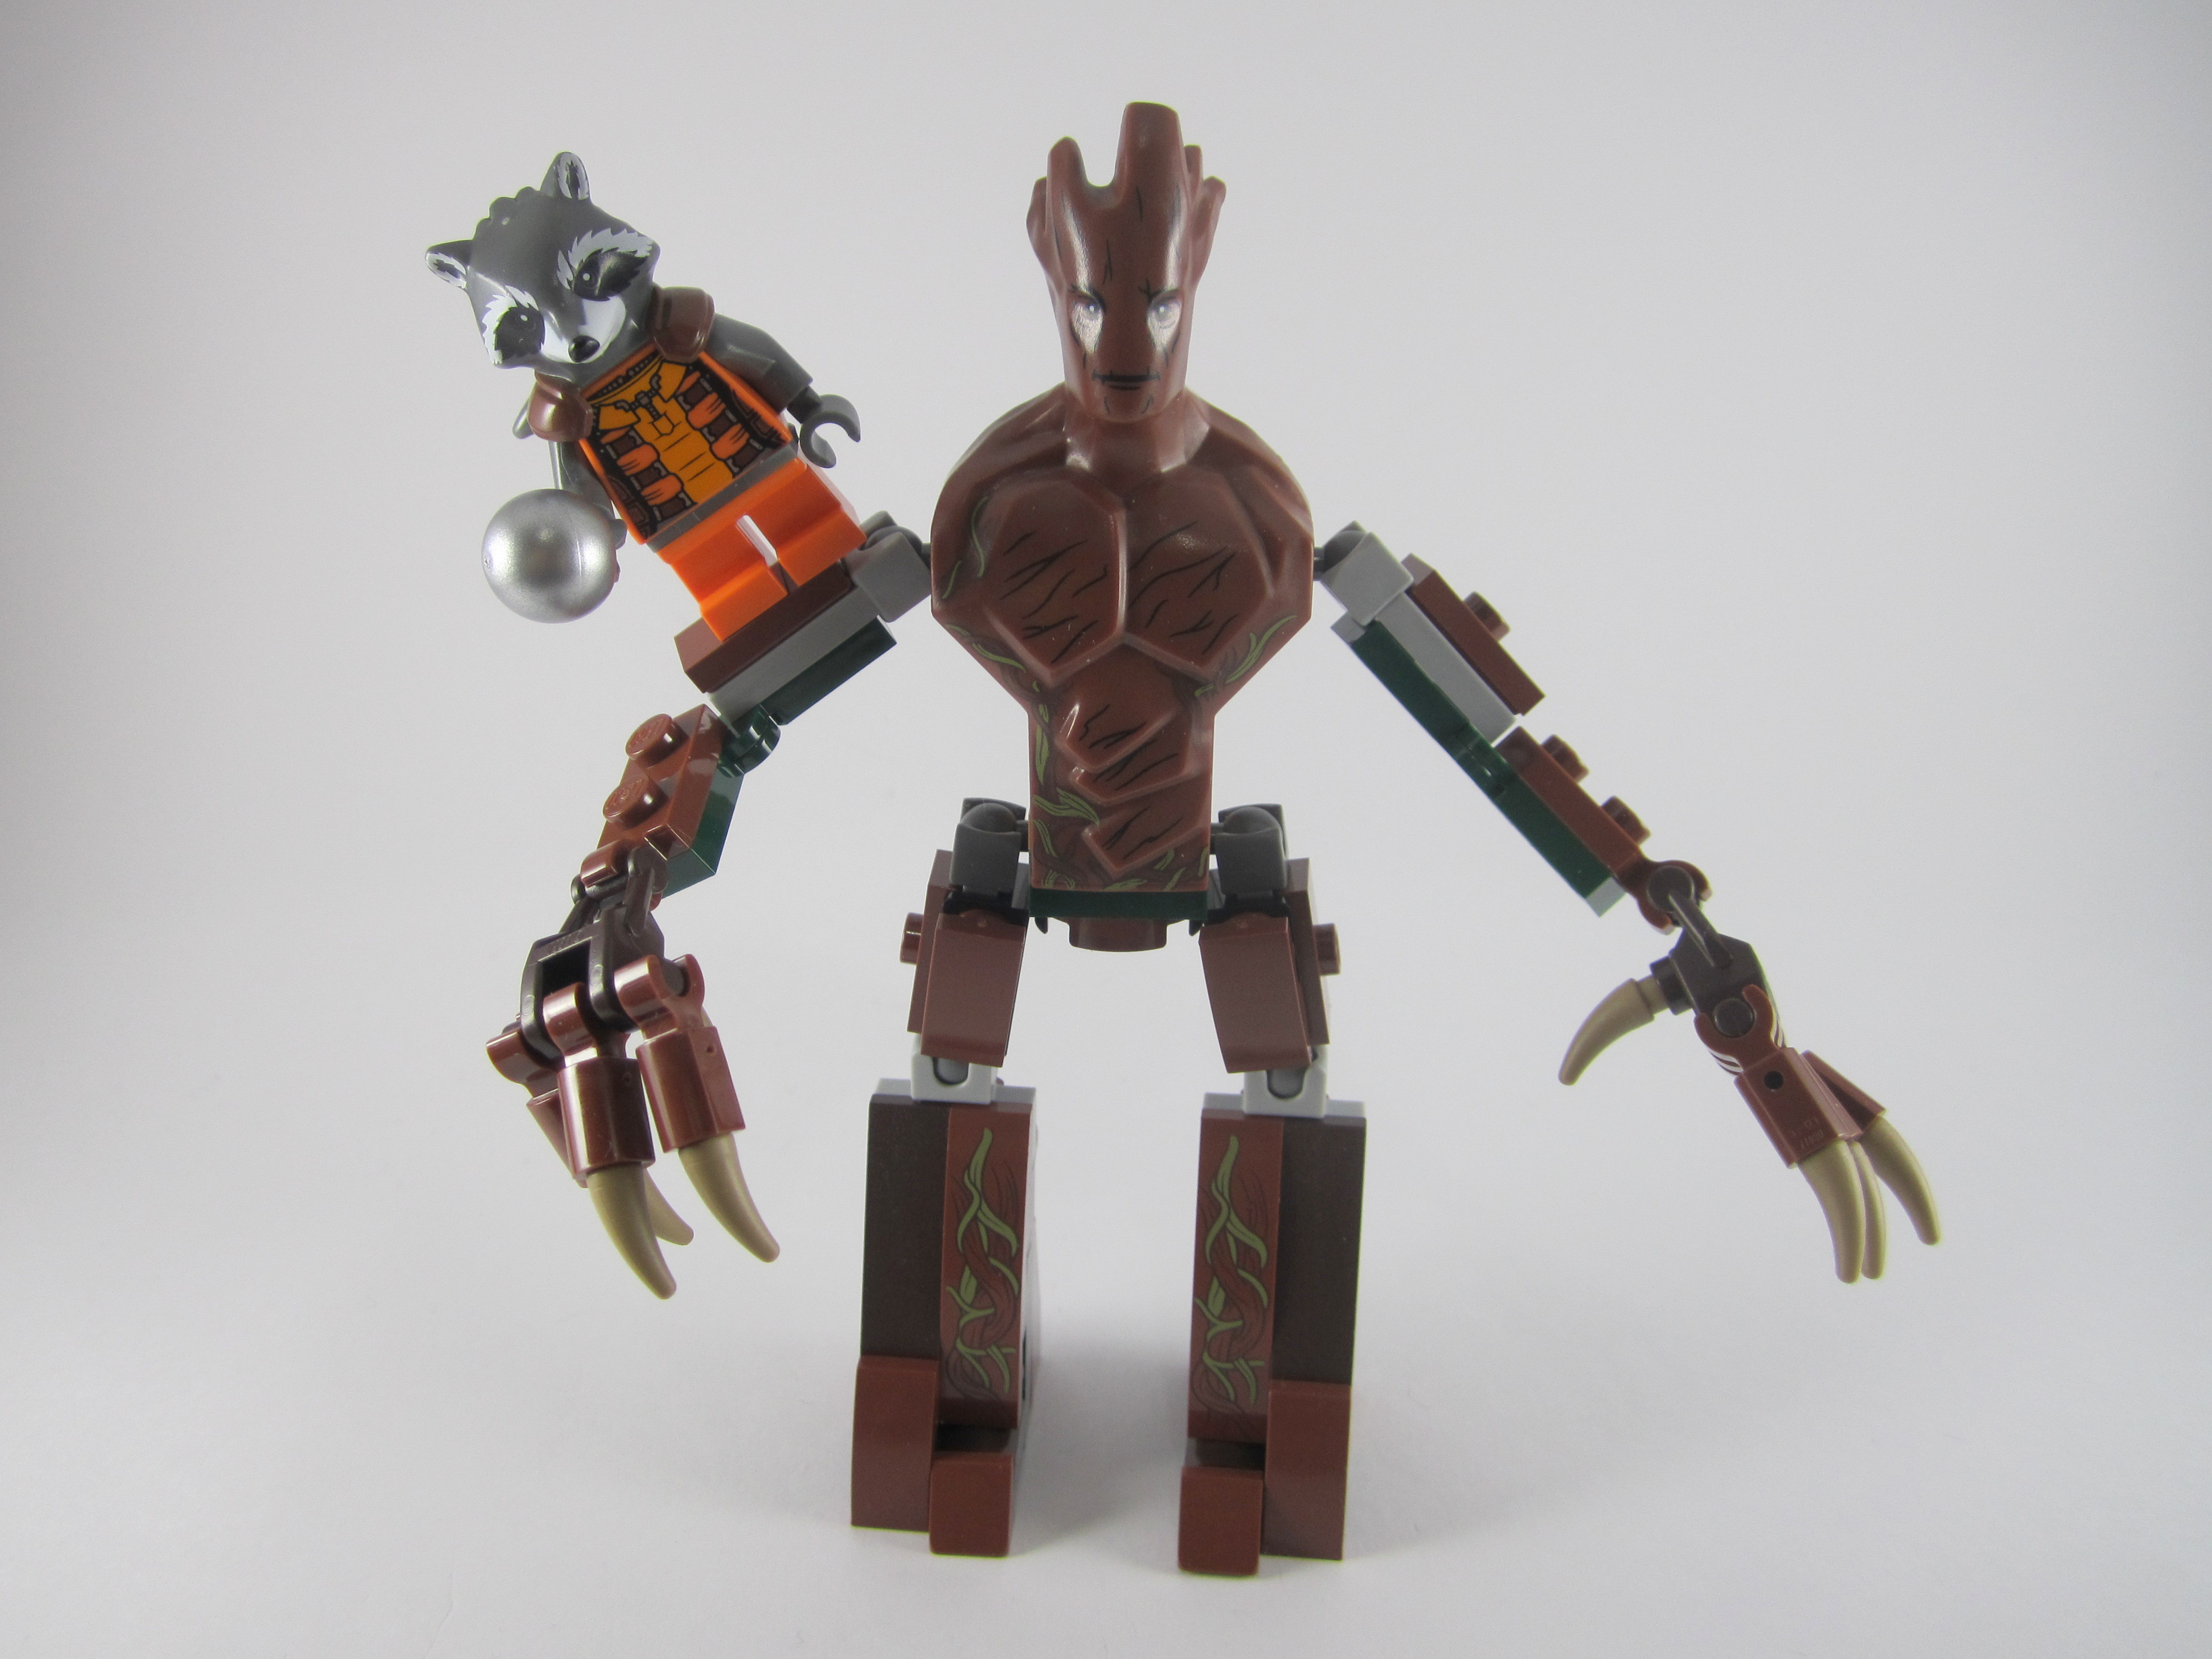 LEGO-Groot-and-Rocket-Raccoon.jpg